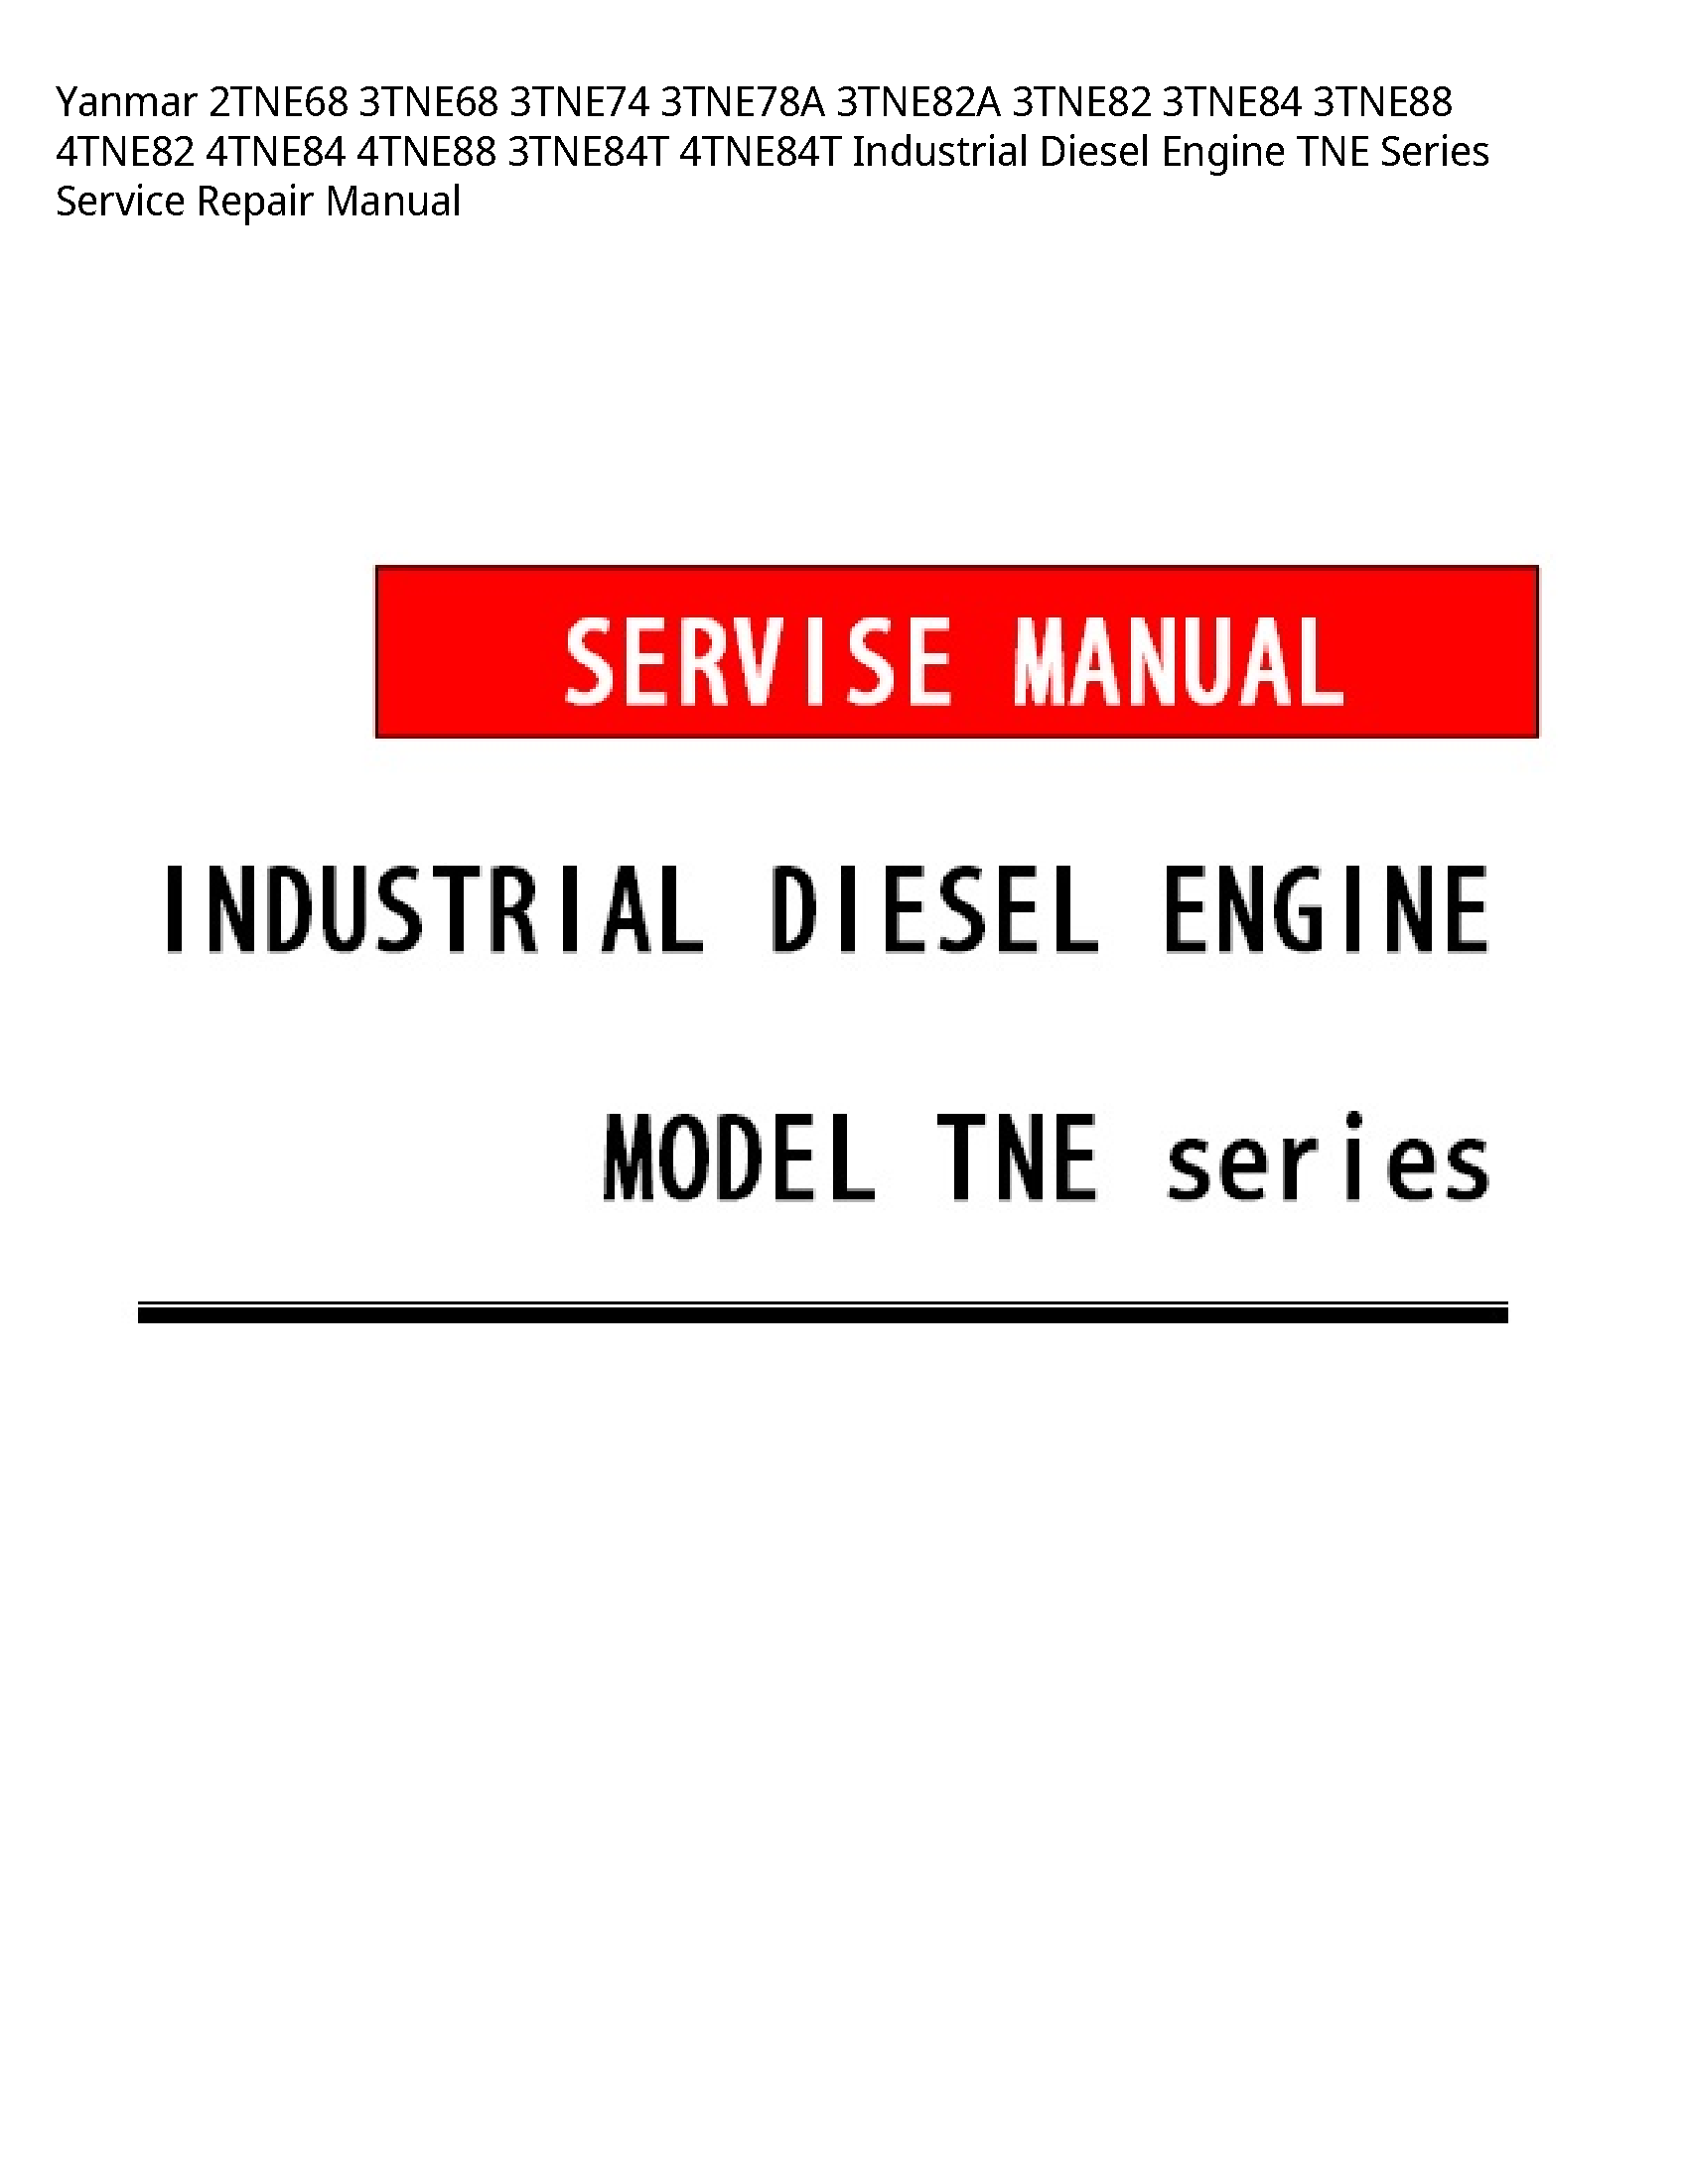 Yanmar 2TNE68 Industrial Diesel Engine TNE Series manual